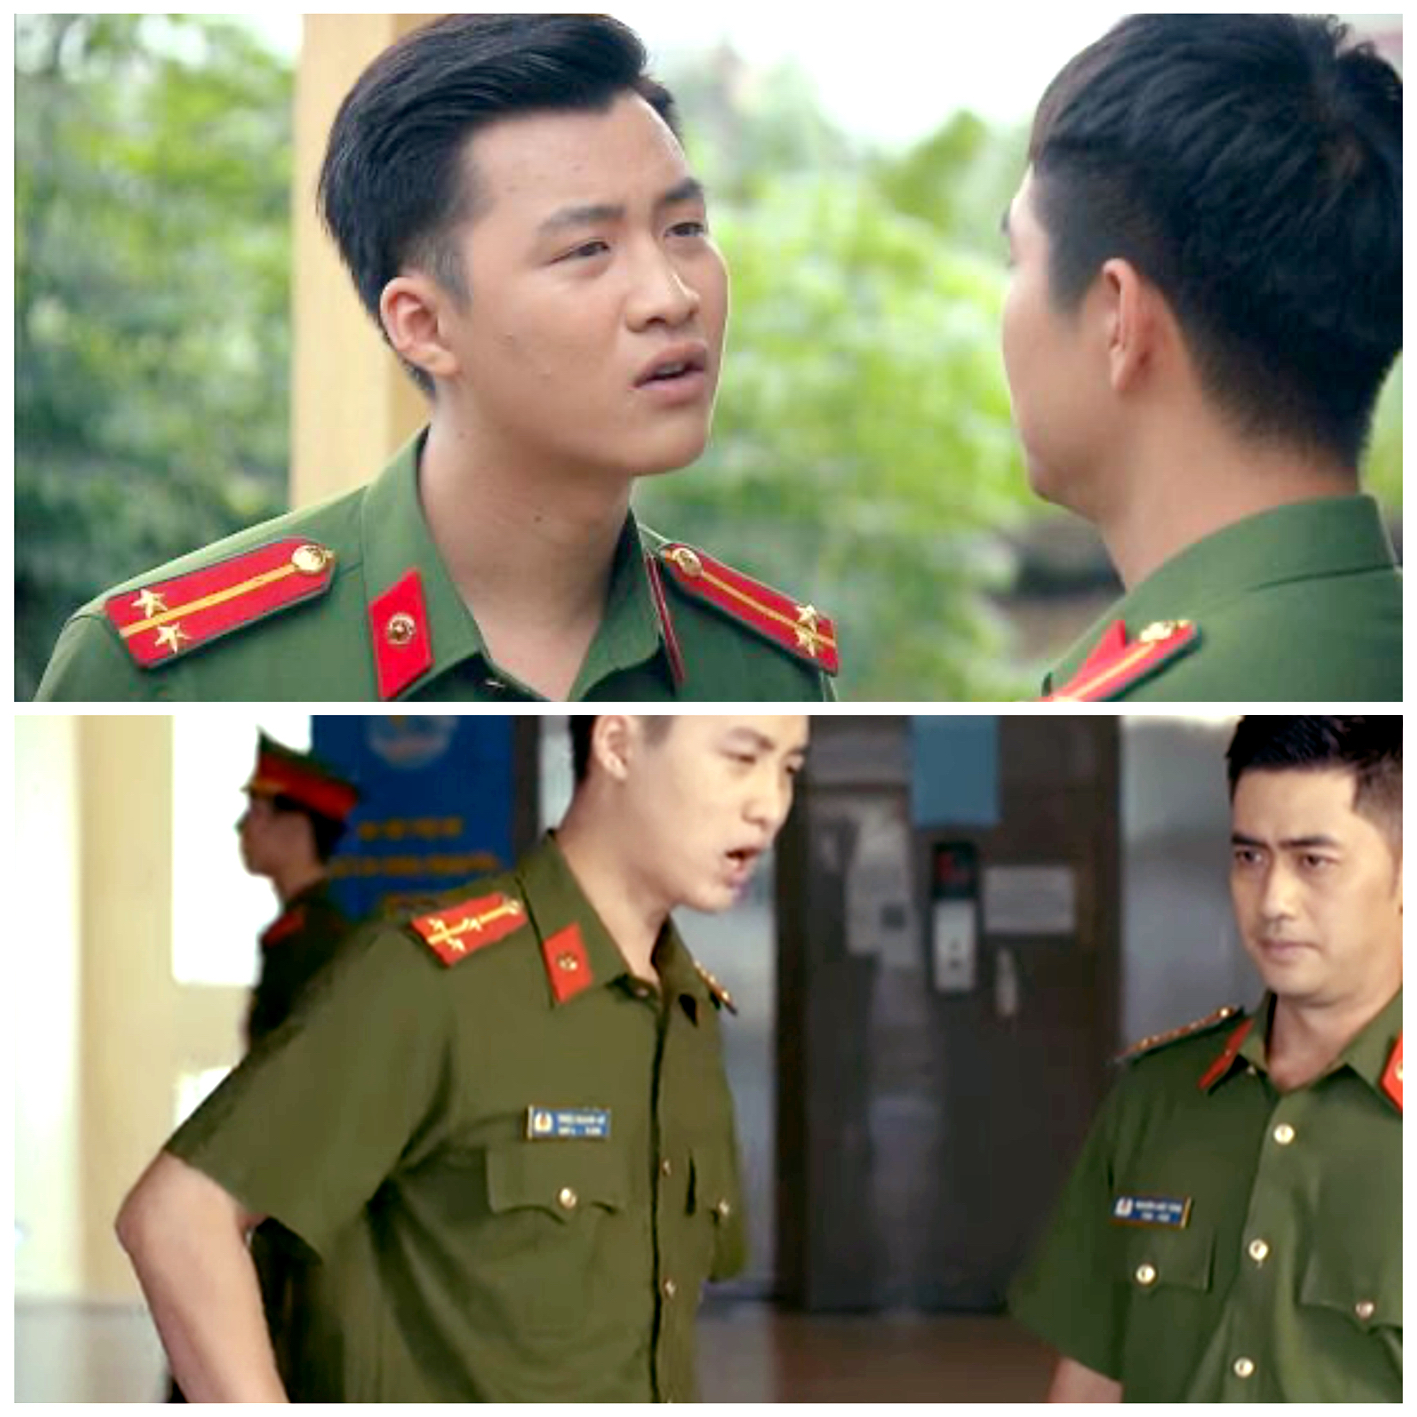 Hiện nay, mỗi tối khán giả đều thấy diễn viên Duy Khánh với tạo hình chiến sĩ công an trong hai phim phát liền kề là Phố trong làng (trên) và Mặt nạ gương (dưới)